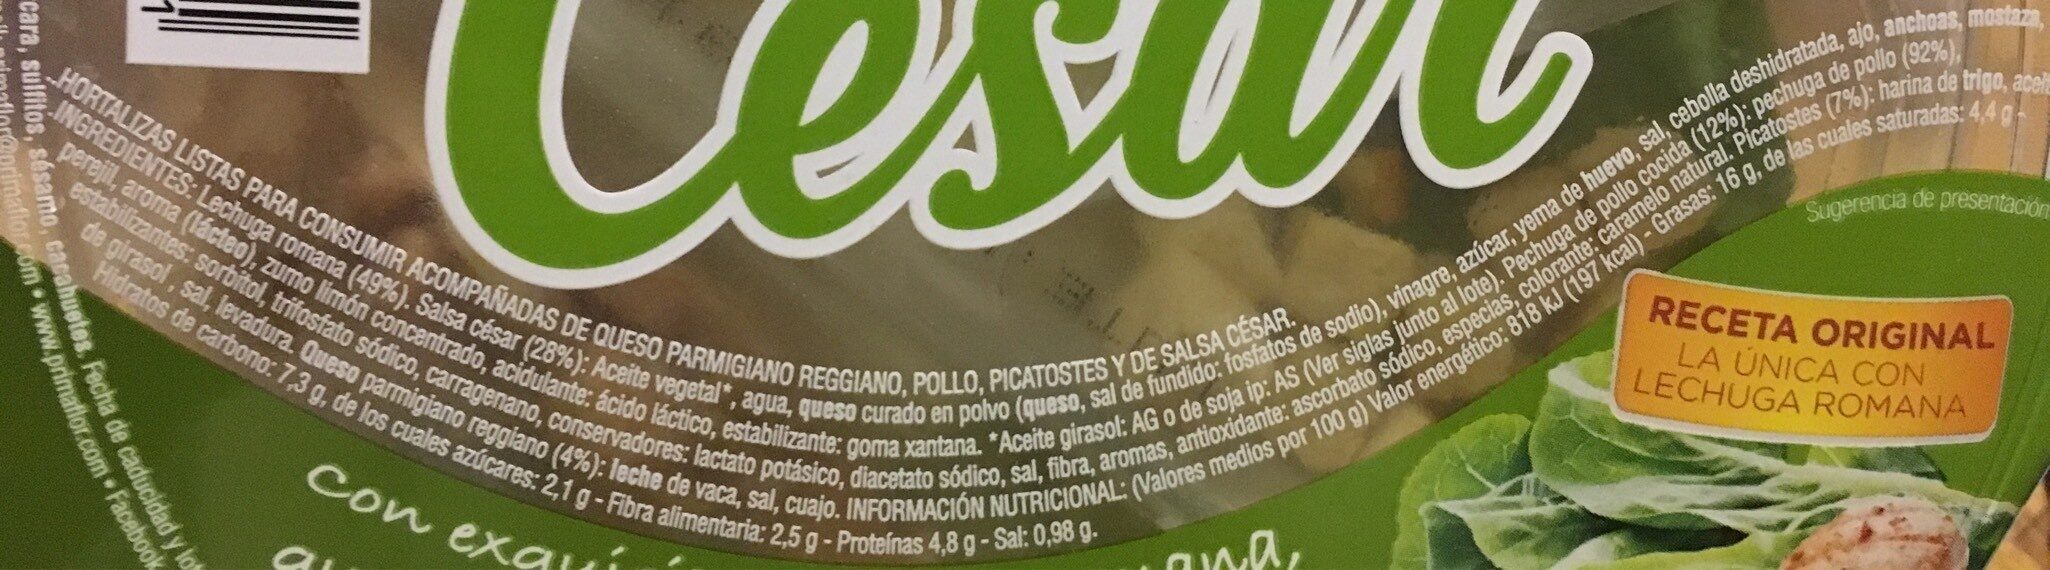 Ensalada fresca Cesar - Nutrition facts - es